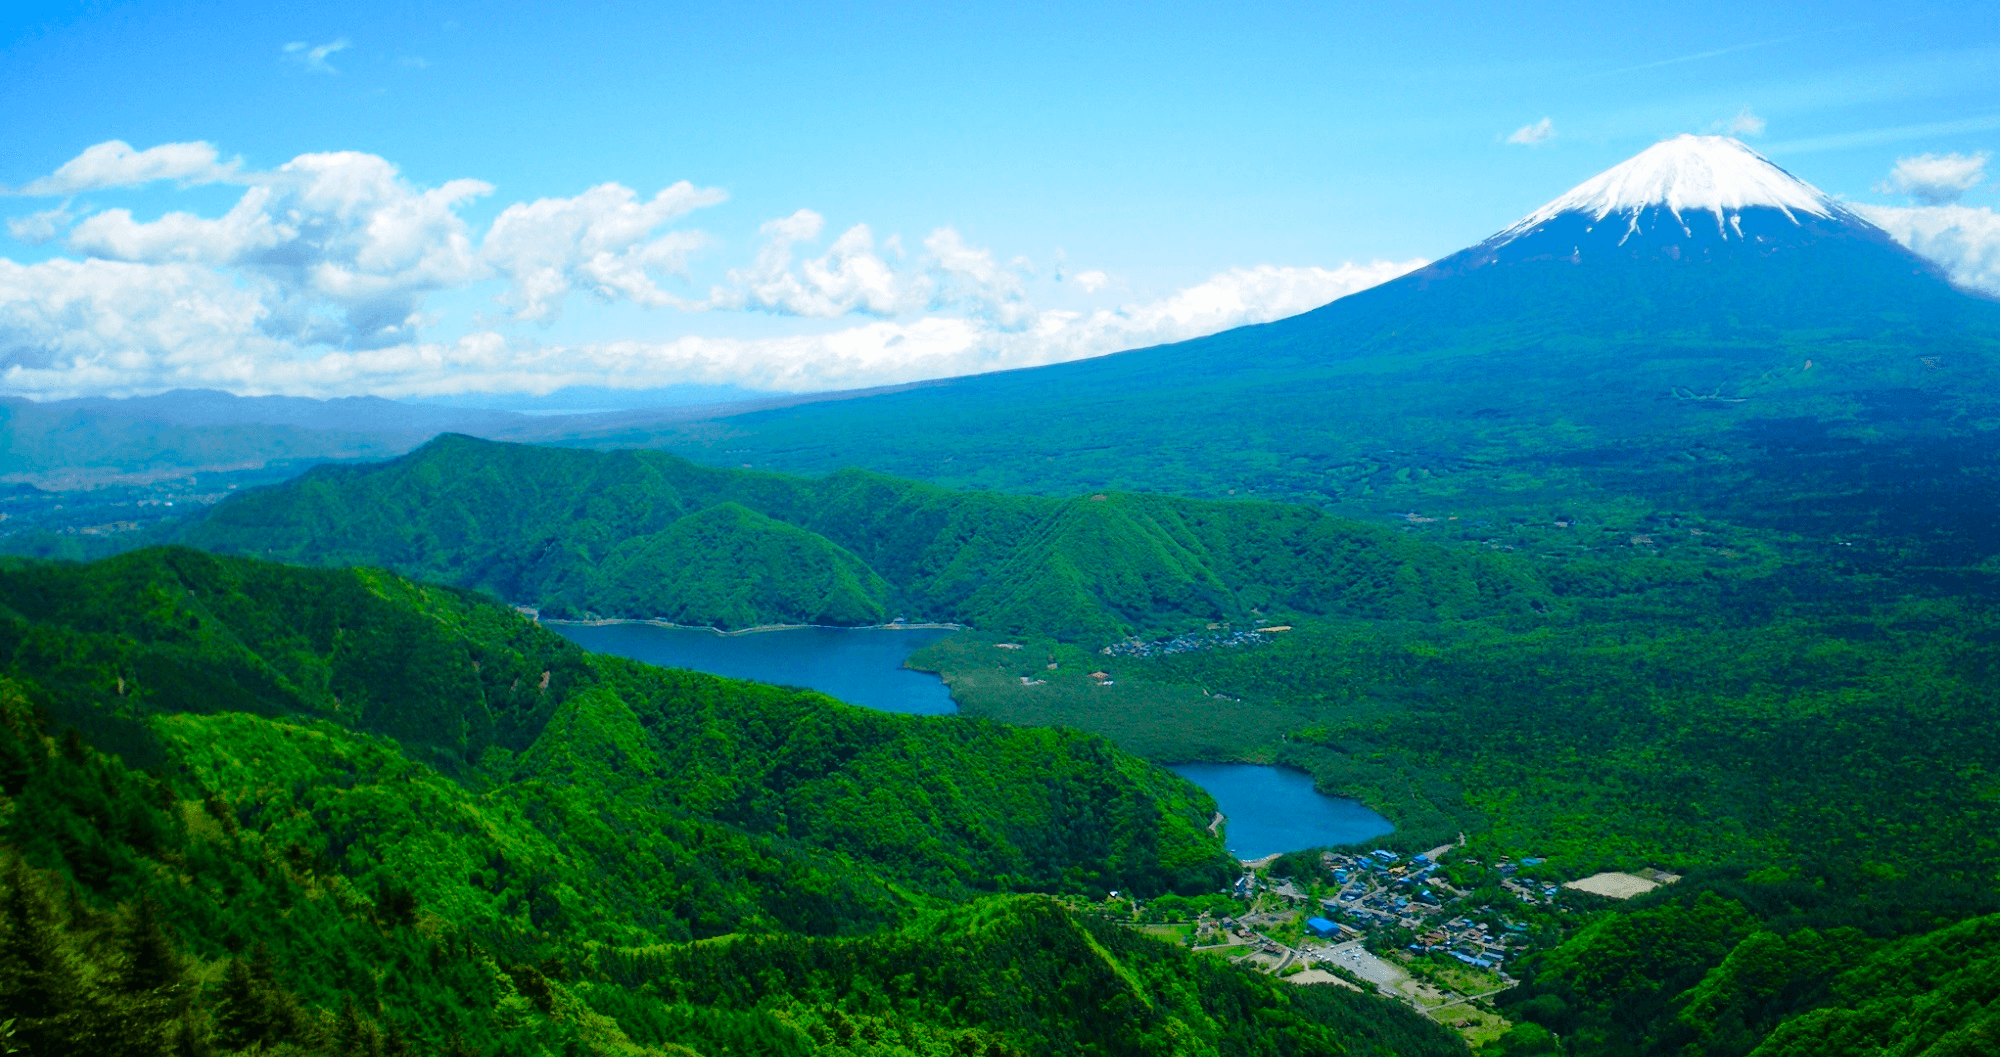 Source: Mount Fuji Climbing